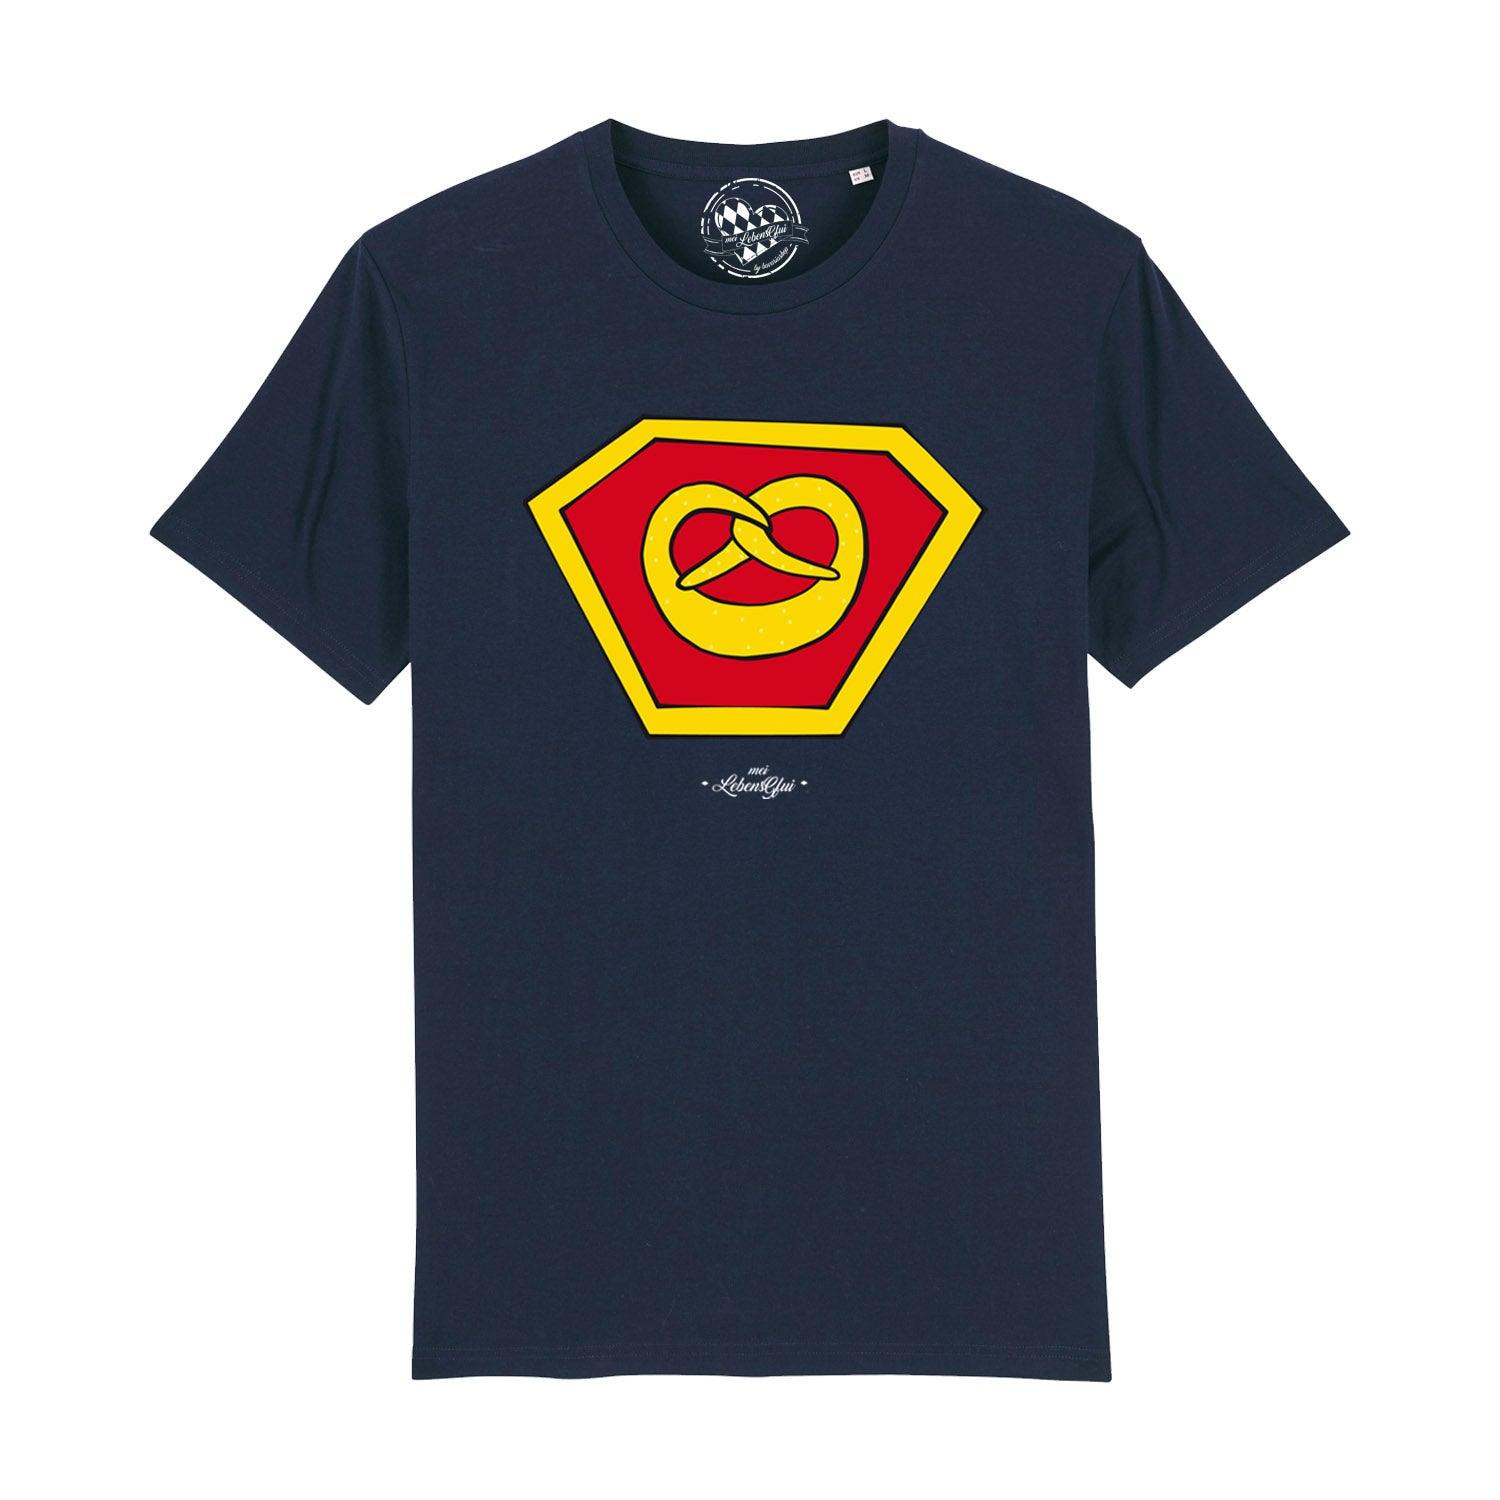 Herren T-Shirt "Super-Brezn" - bavariashop - mei LebensGfui